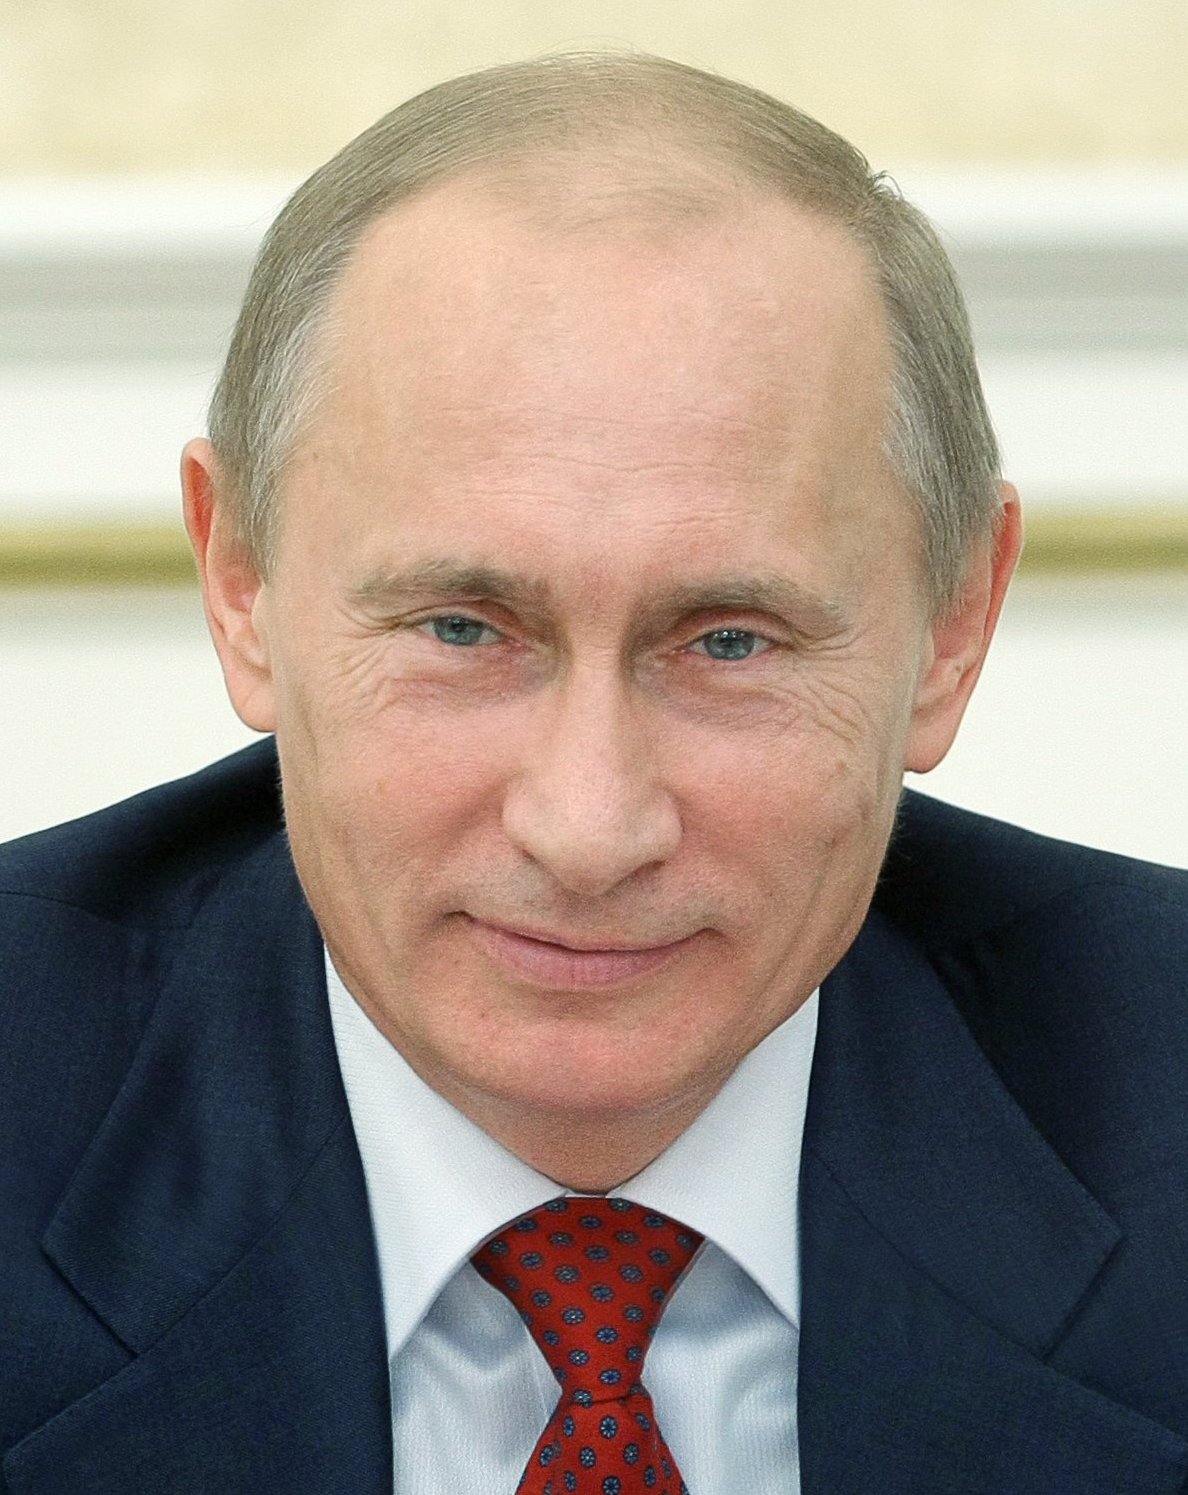 Vladimir_Putin_12023_%28cropped%29.jpg